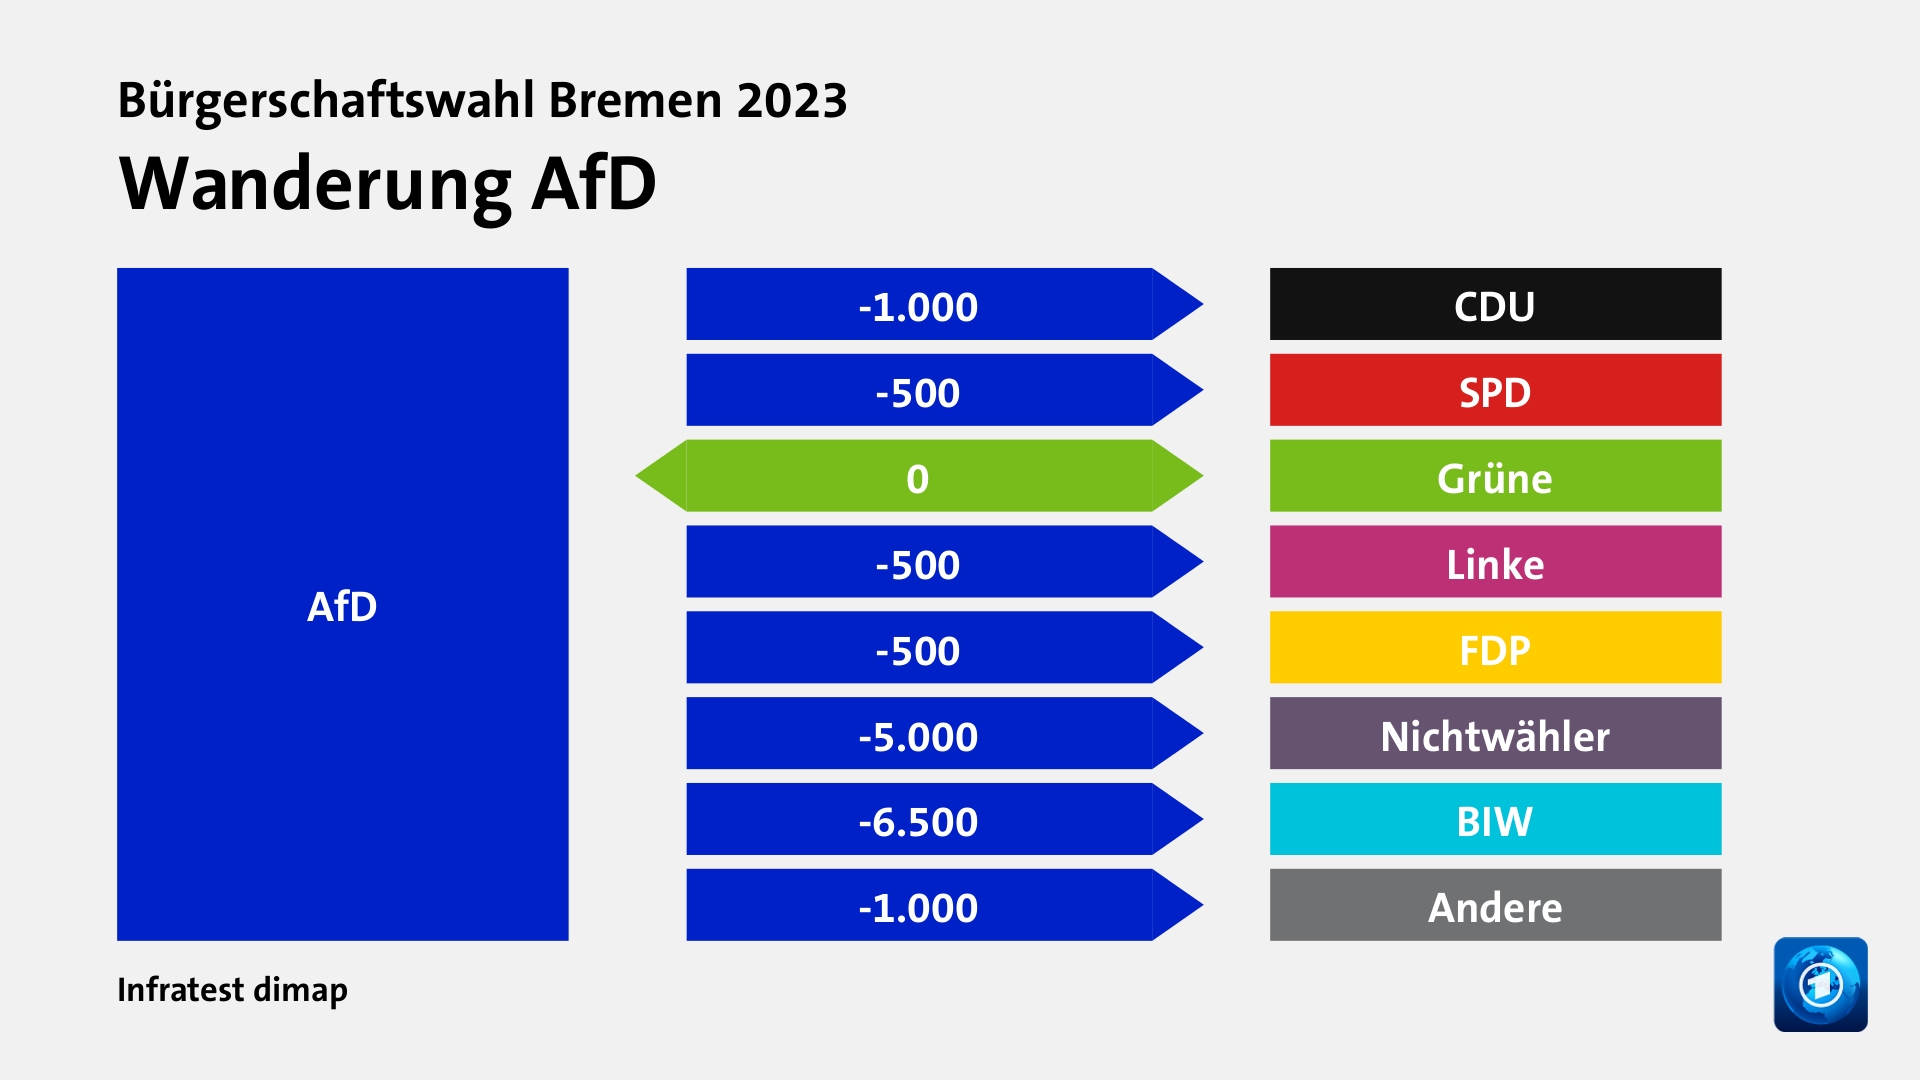 Wanderung AfDzu CDU 1.000 Wähler, zu SPD 500 Wähler, zu Grüne 0 Wähler, zu Linke 500 Wähler, zu FDP 500 Wähler, zu Nichtwähler 5.000 Wähler, zu BIW 6.500 Wähler, zu Andere 1.000 Wähler, Quelle: Infratest dimap